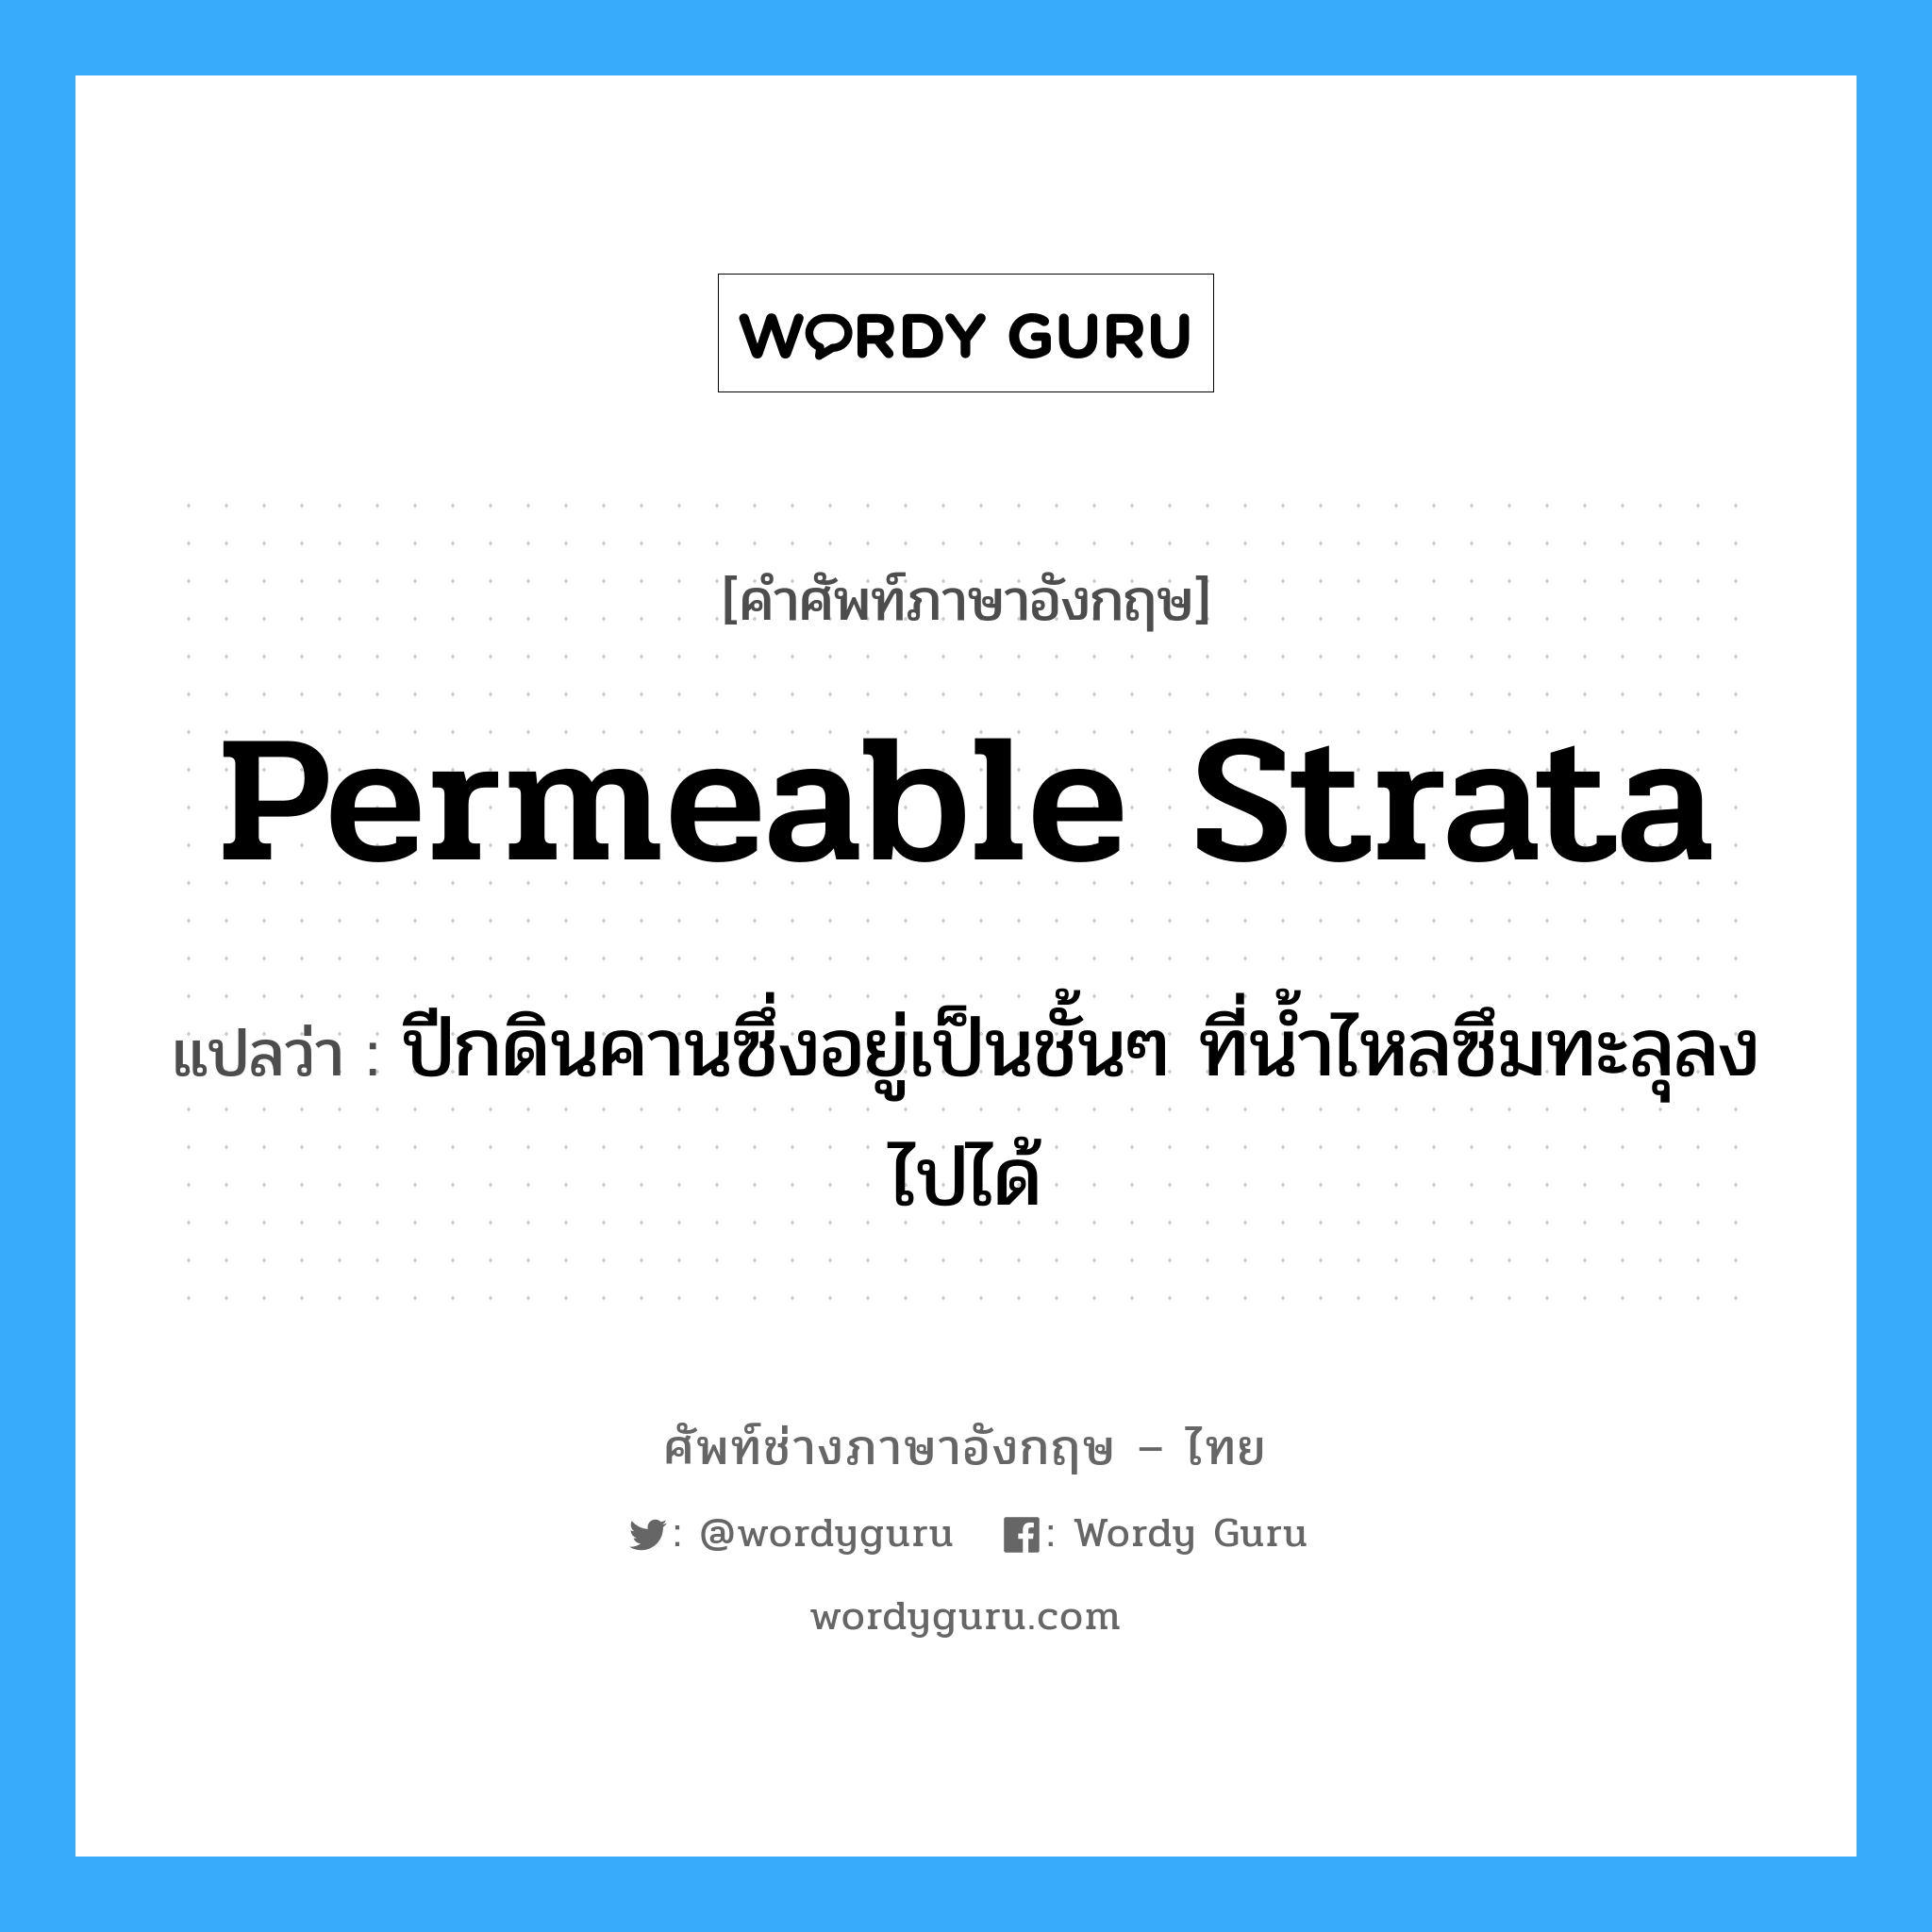 permeable strata แปลว่า?, คำศัพท์ช่างภาษาอังกฤษ - ไทย permeable strata คำศัพท์ภาษาอังกฤษ permeable strata แปลว่า ปีกดินคานซึ่งอยู่เป็นชั้นๆ ที่น้ำไหลซึมทะลุลงไปได้